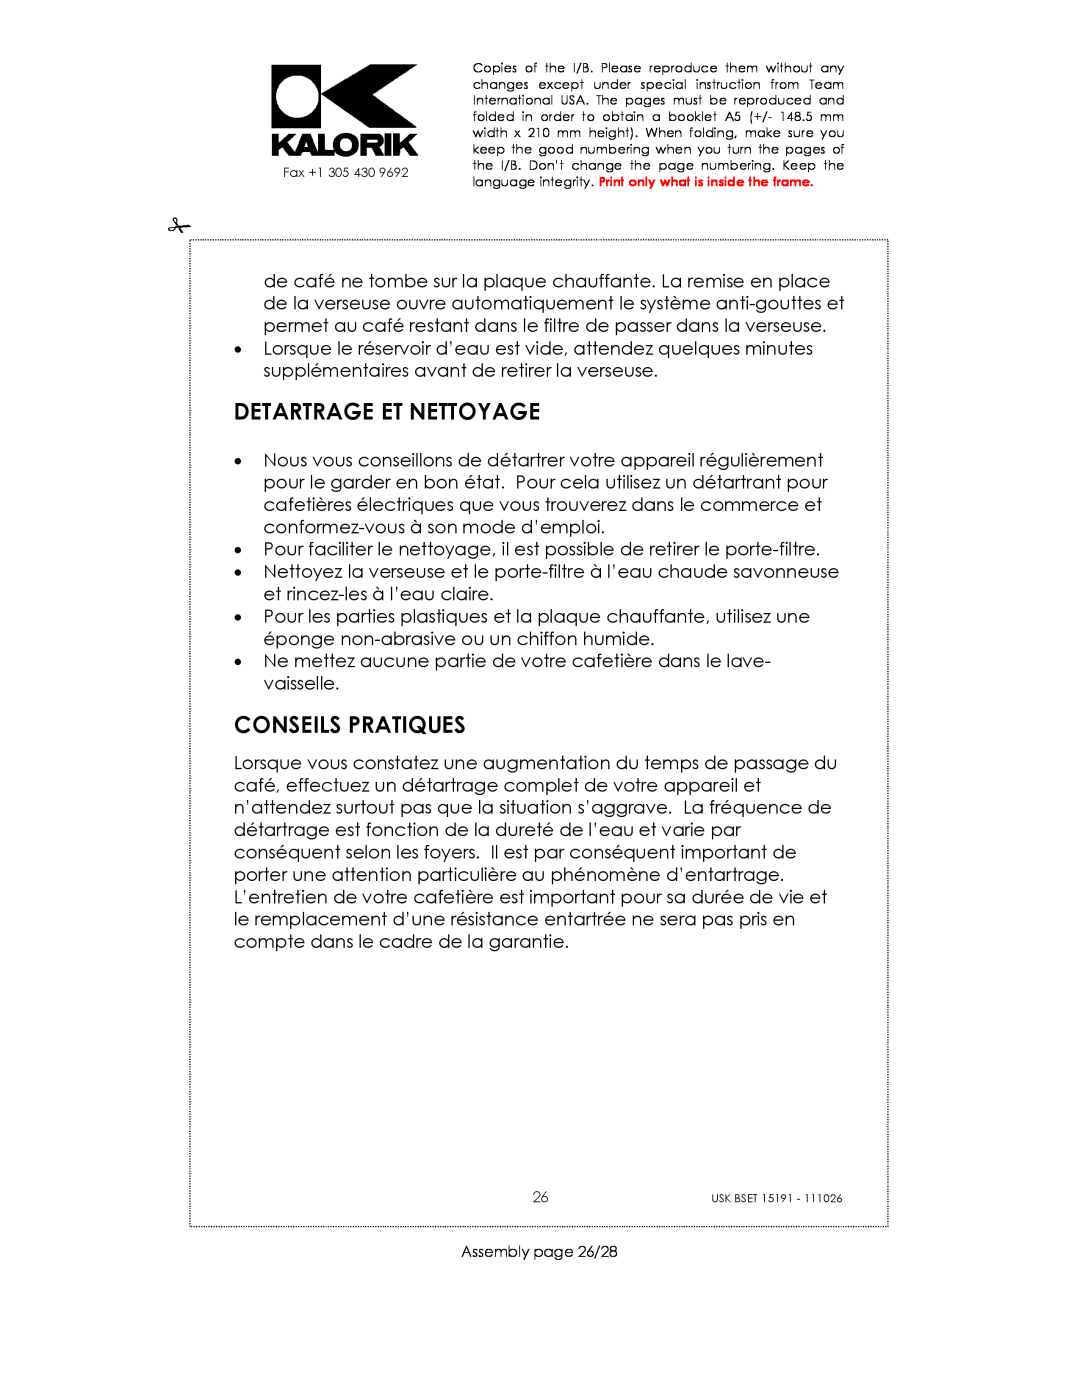 Kalorik USK BSET 15191 manual Detartrage Et Nettoyage, Conseils Pratiques, Assembly page 26/28 